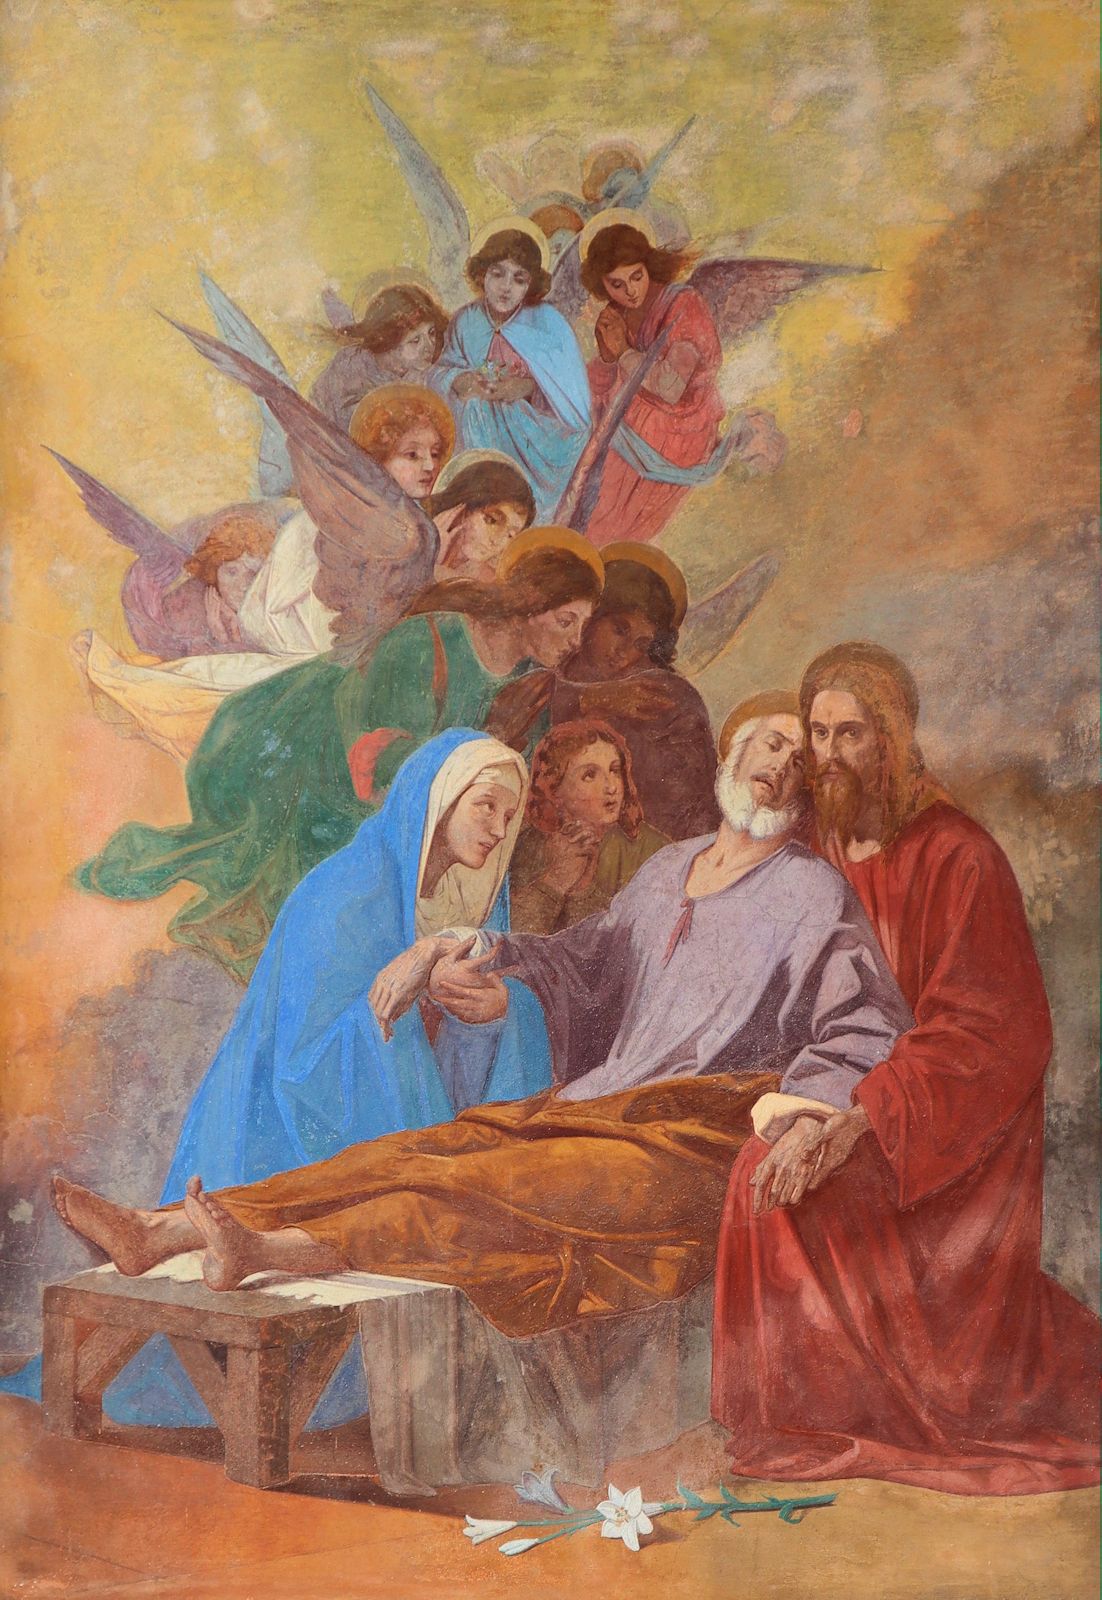 Josephs Tod, Bild im Santuarium Santa Maria del Monte bei Varese